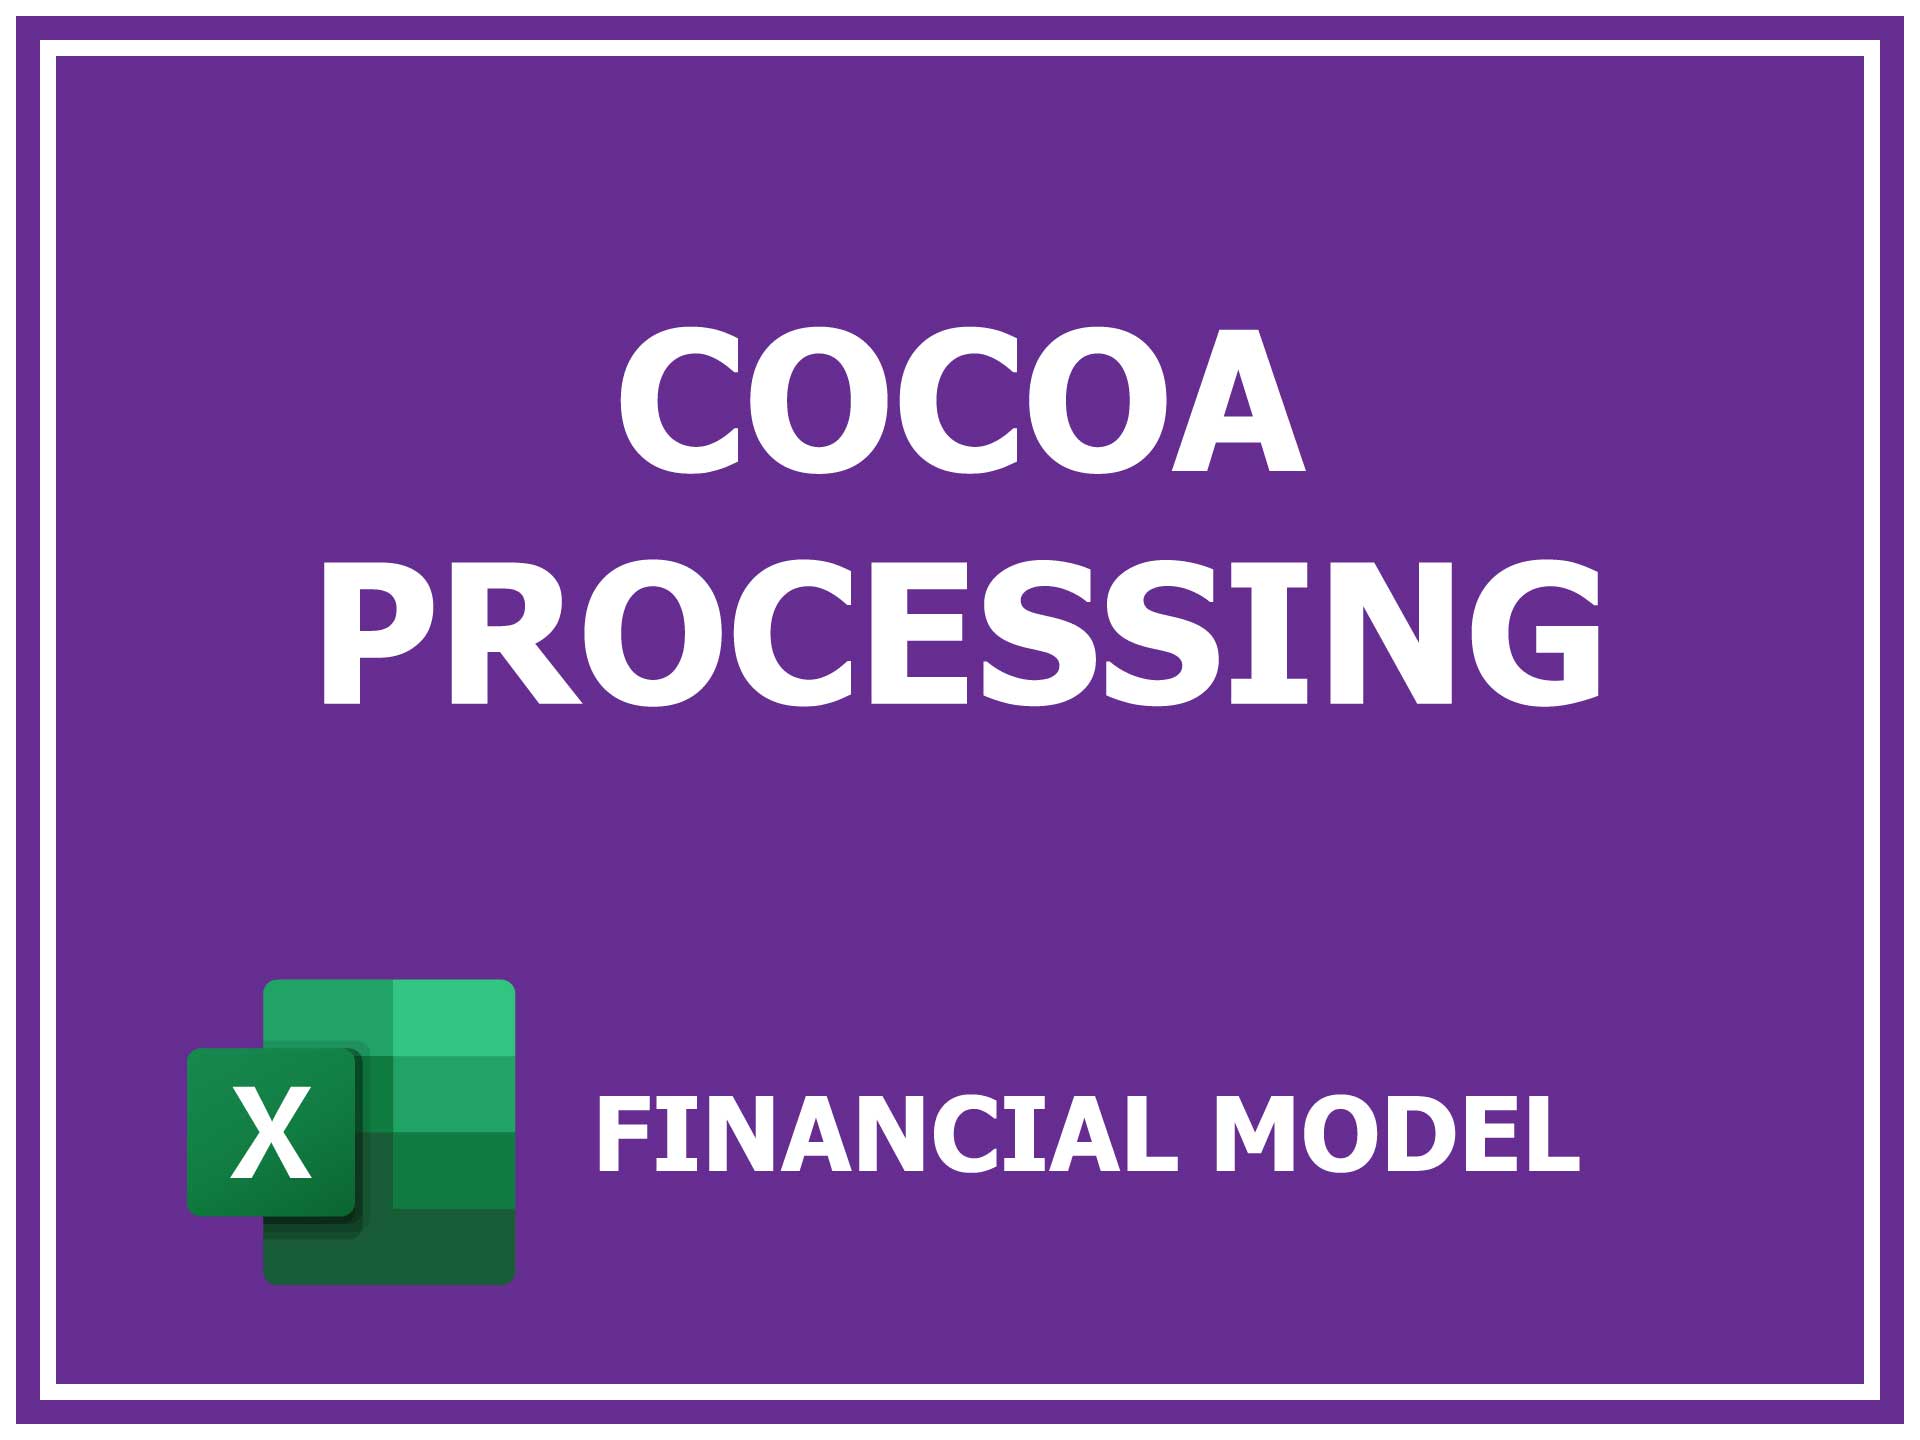 Cocoa Processing